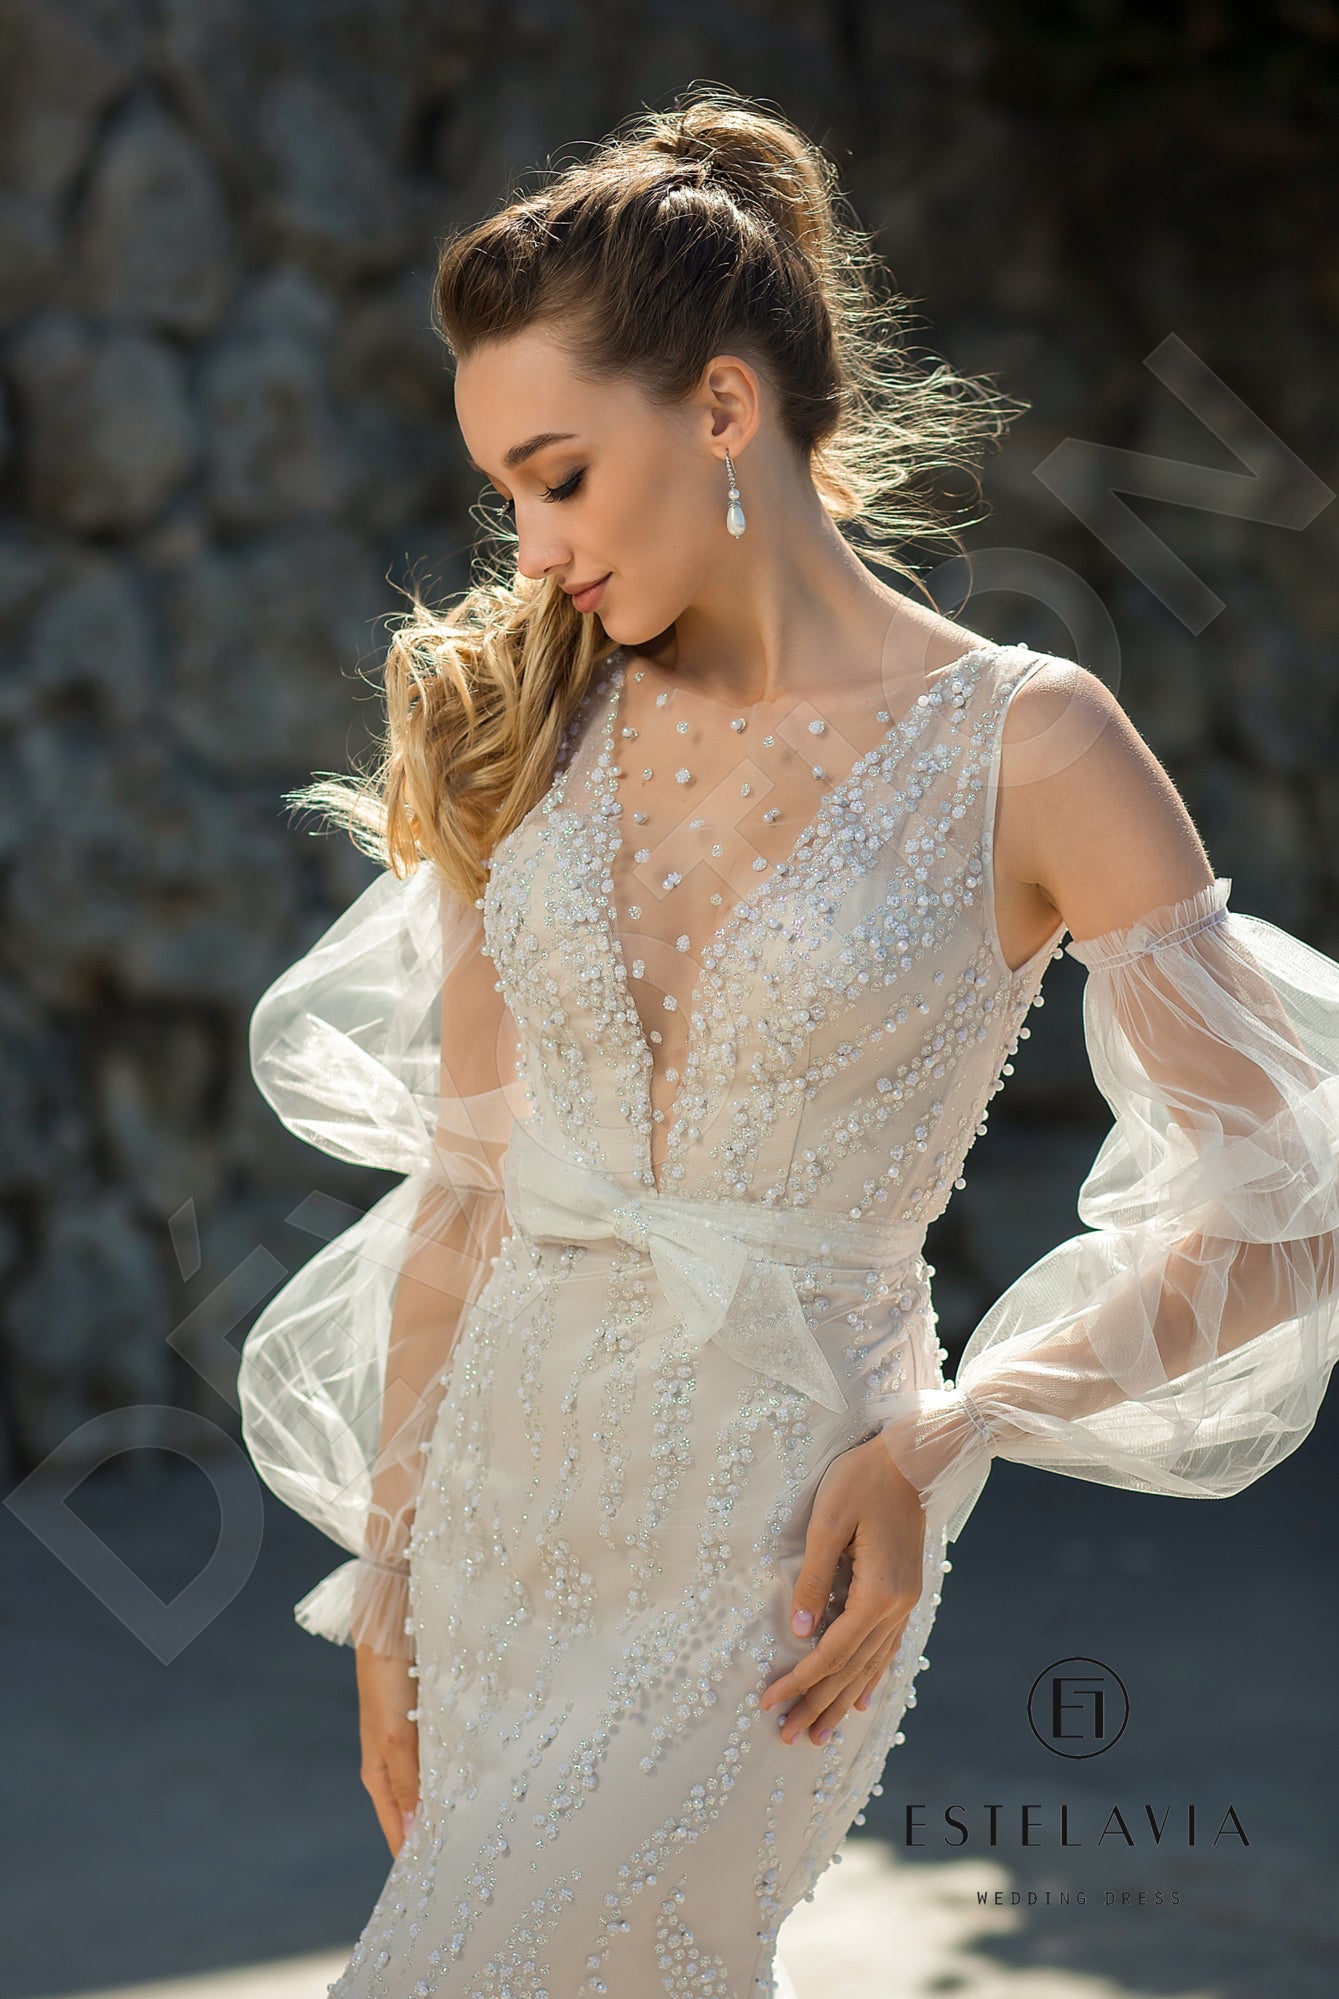 Emilina Trumpet/Mermaid Jewel Milk Cappuccino Wedding dress